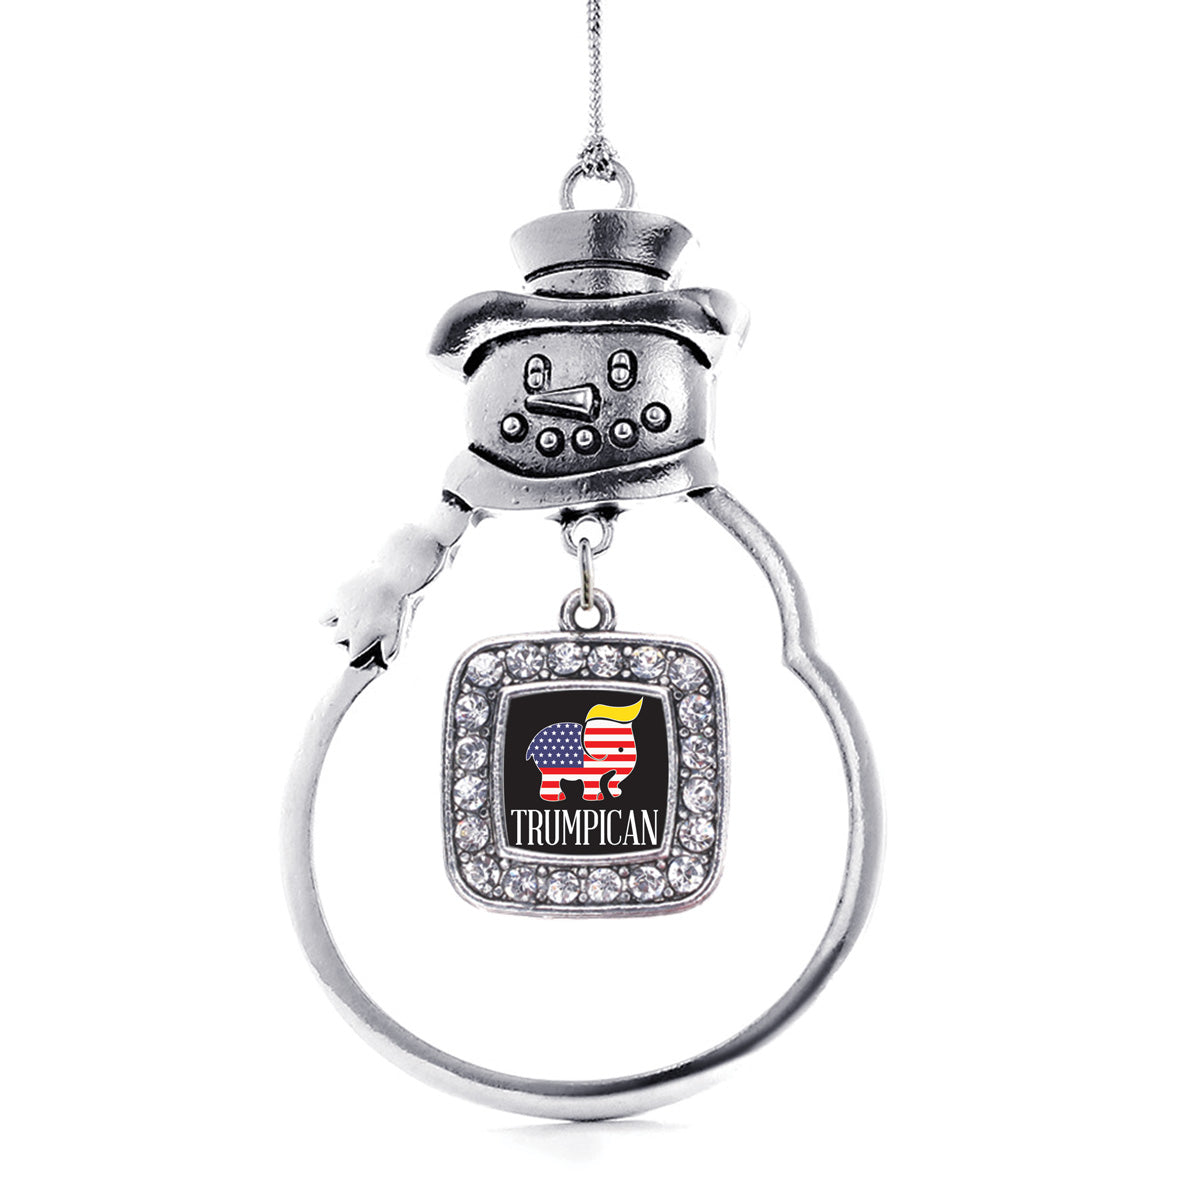 Silver Trumpican Square Charm Snowman Ornament